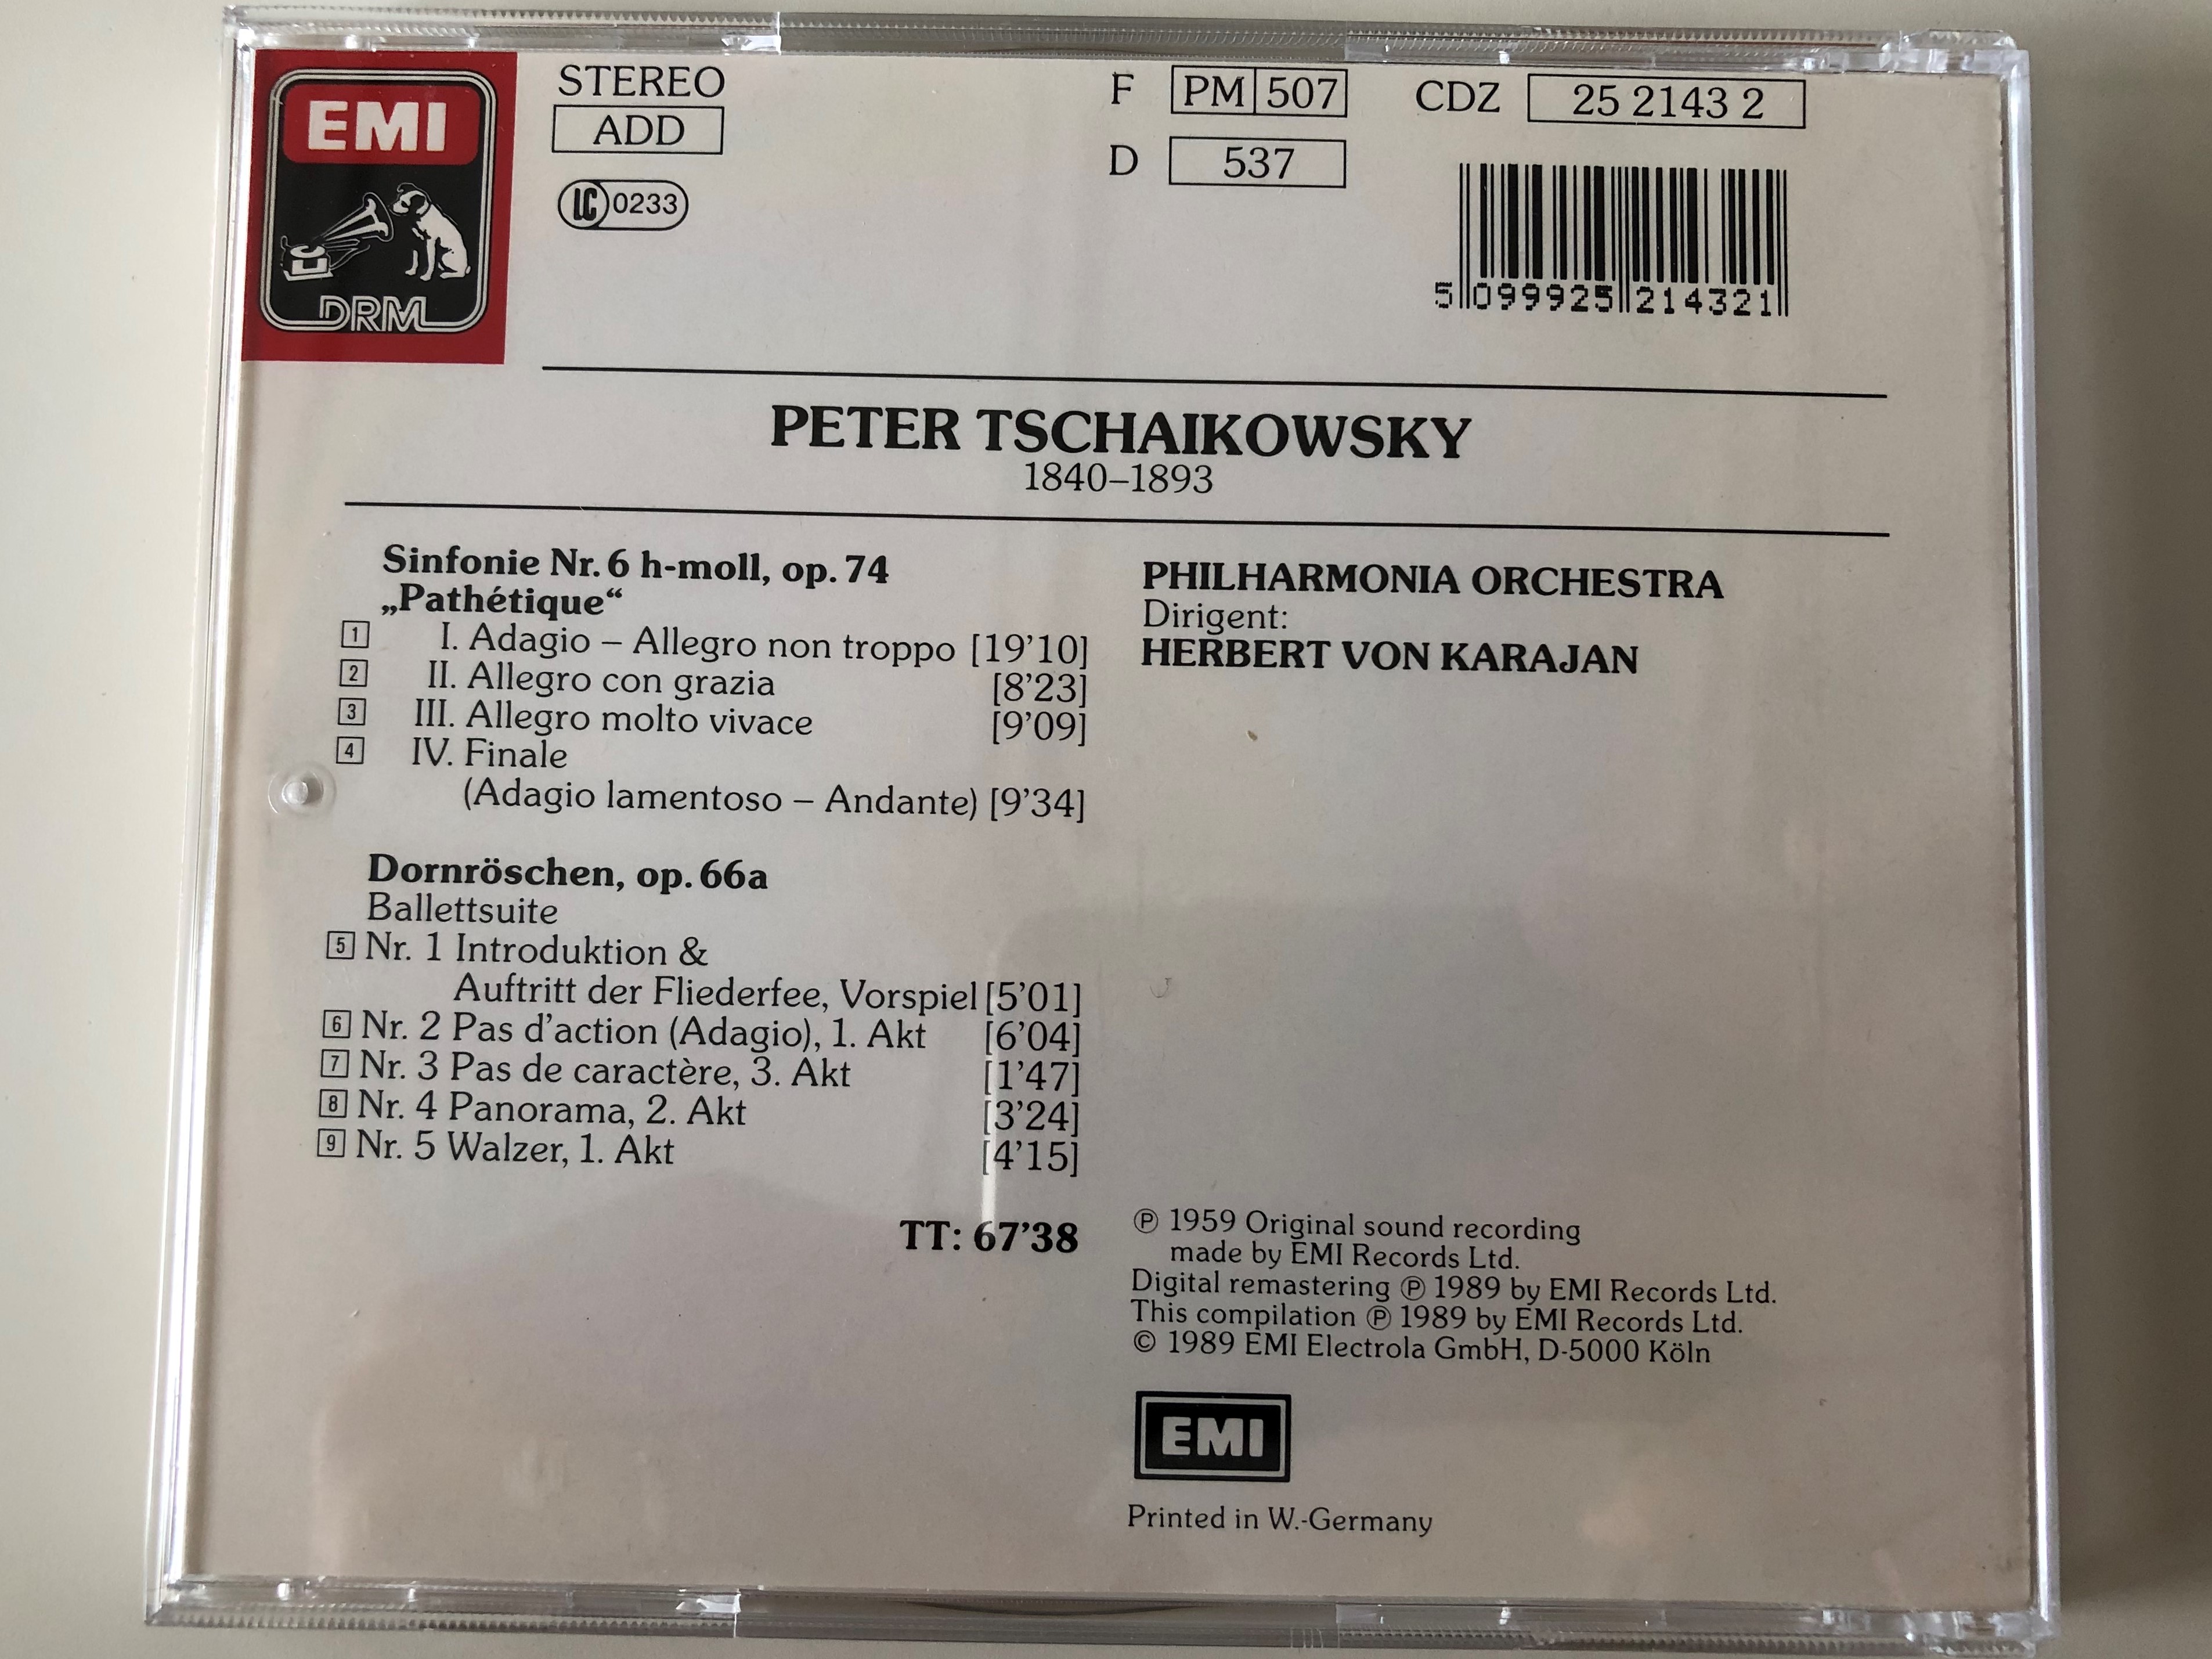 tschaikowsky-sinfonie-no.-6-path-tique-dornr-schen-suite-philharmonia-orchestra-herbert-von-karajan-emi-drm-audio-cd-1989-stereo-cdz-25-2143-2-5-.jpg